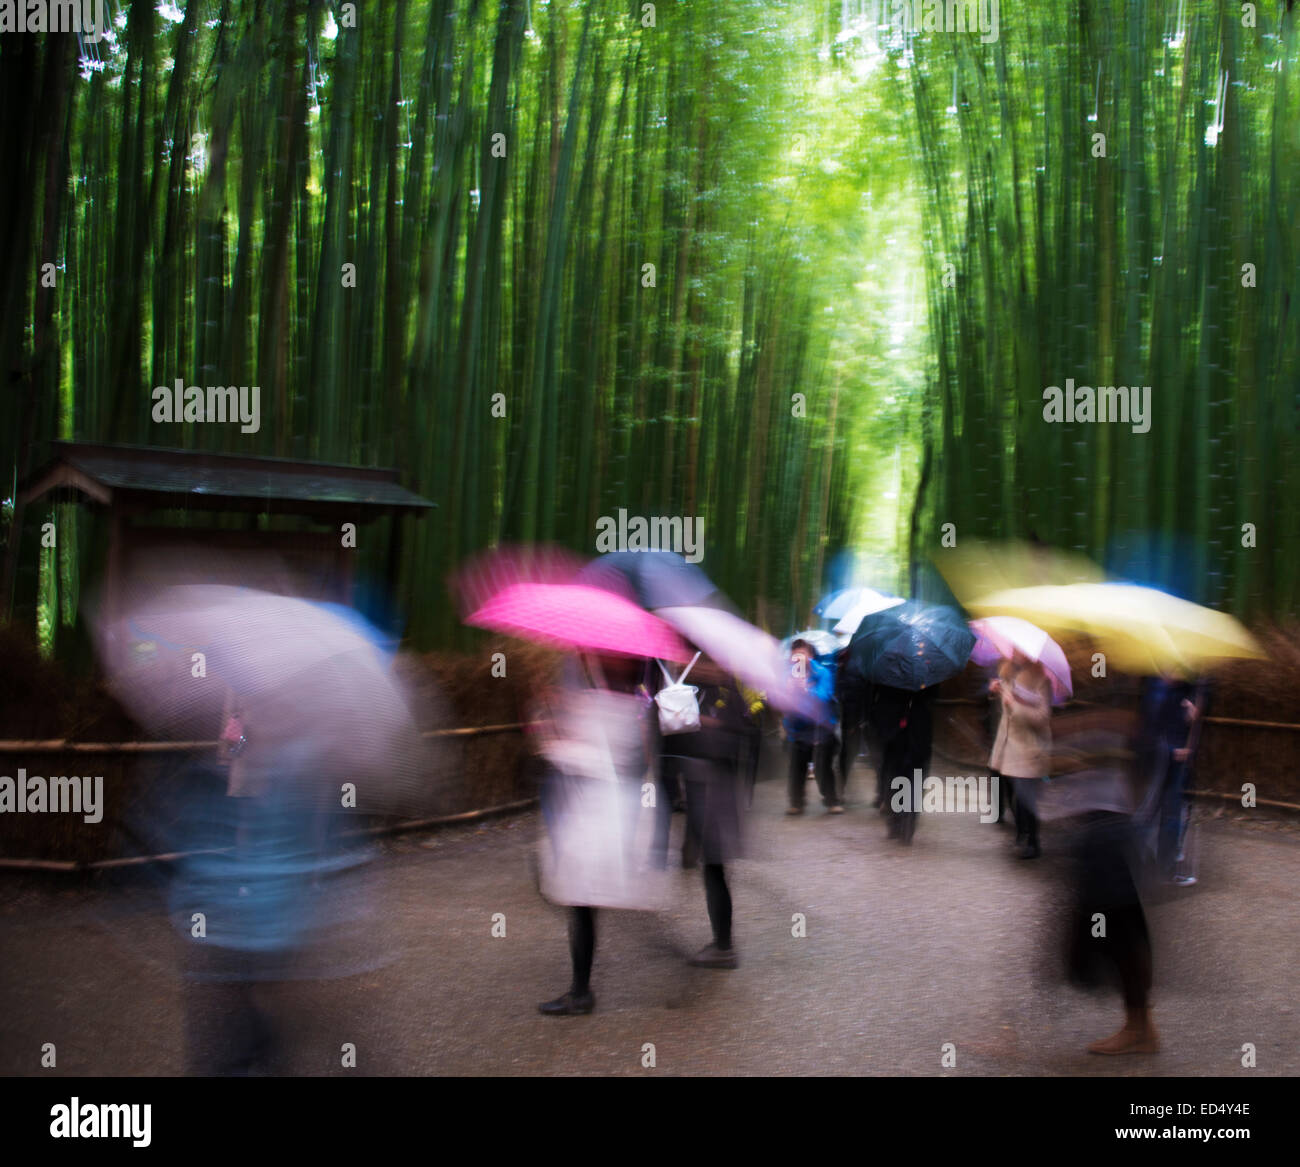 Künstlerischen Bild an einem verregneten Tag in Bambushainen der Arashiyama, Kyoto, Japan. Stockfoto